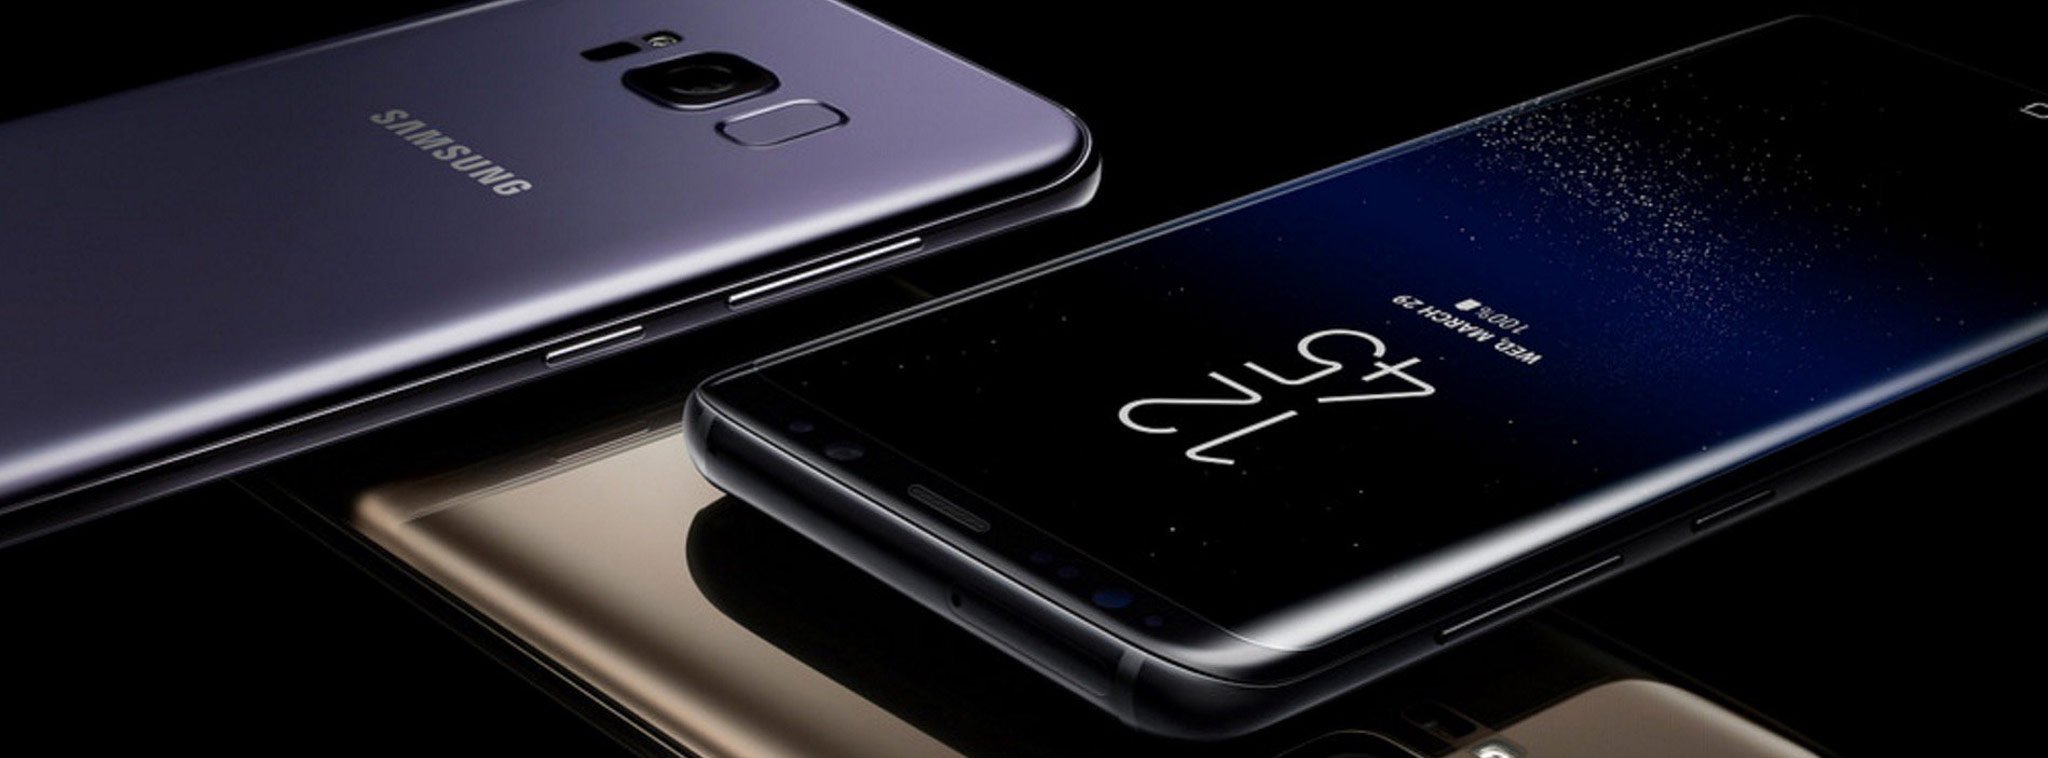 Samsung đã bán được hơn 5 triệu máy Galaxy S8/S8+